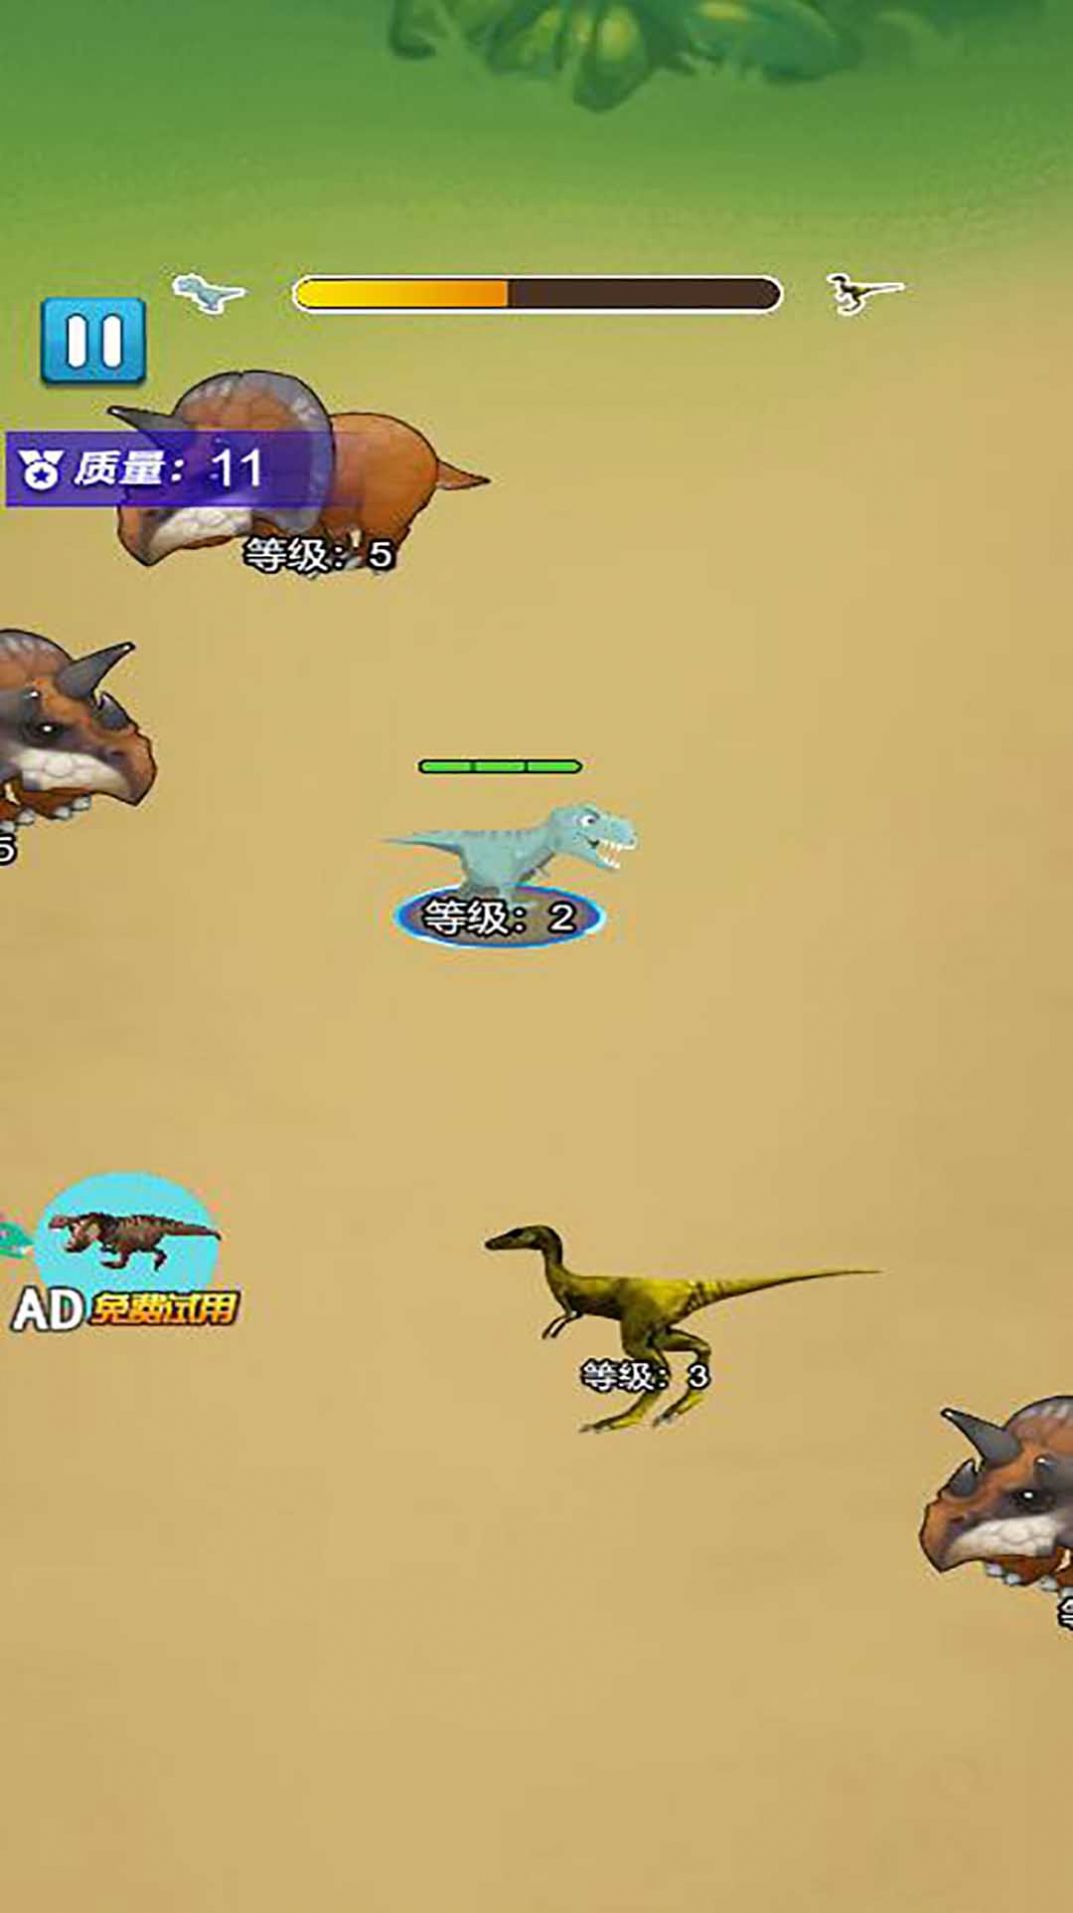 恐龙龙合成大师游戏下载安装 v5.0截图2